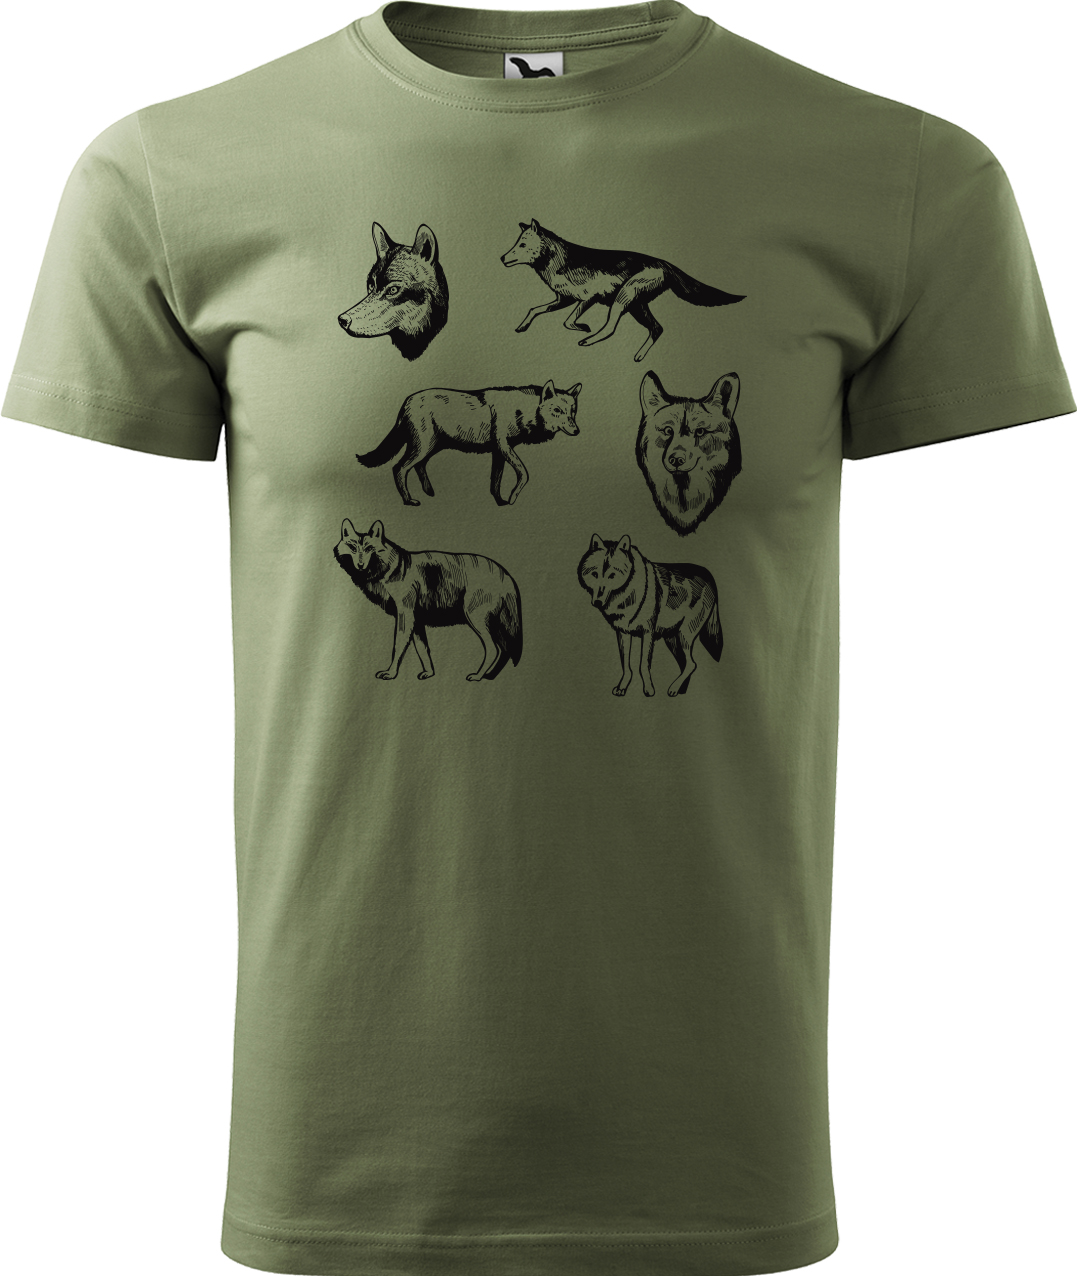 Pánské tričko s vlkem - Vlci Velikost: XL, Barva: Světlá khaki (28), Střih: pánský